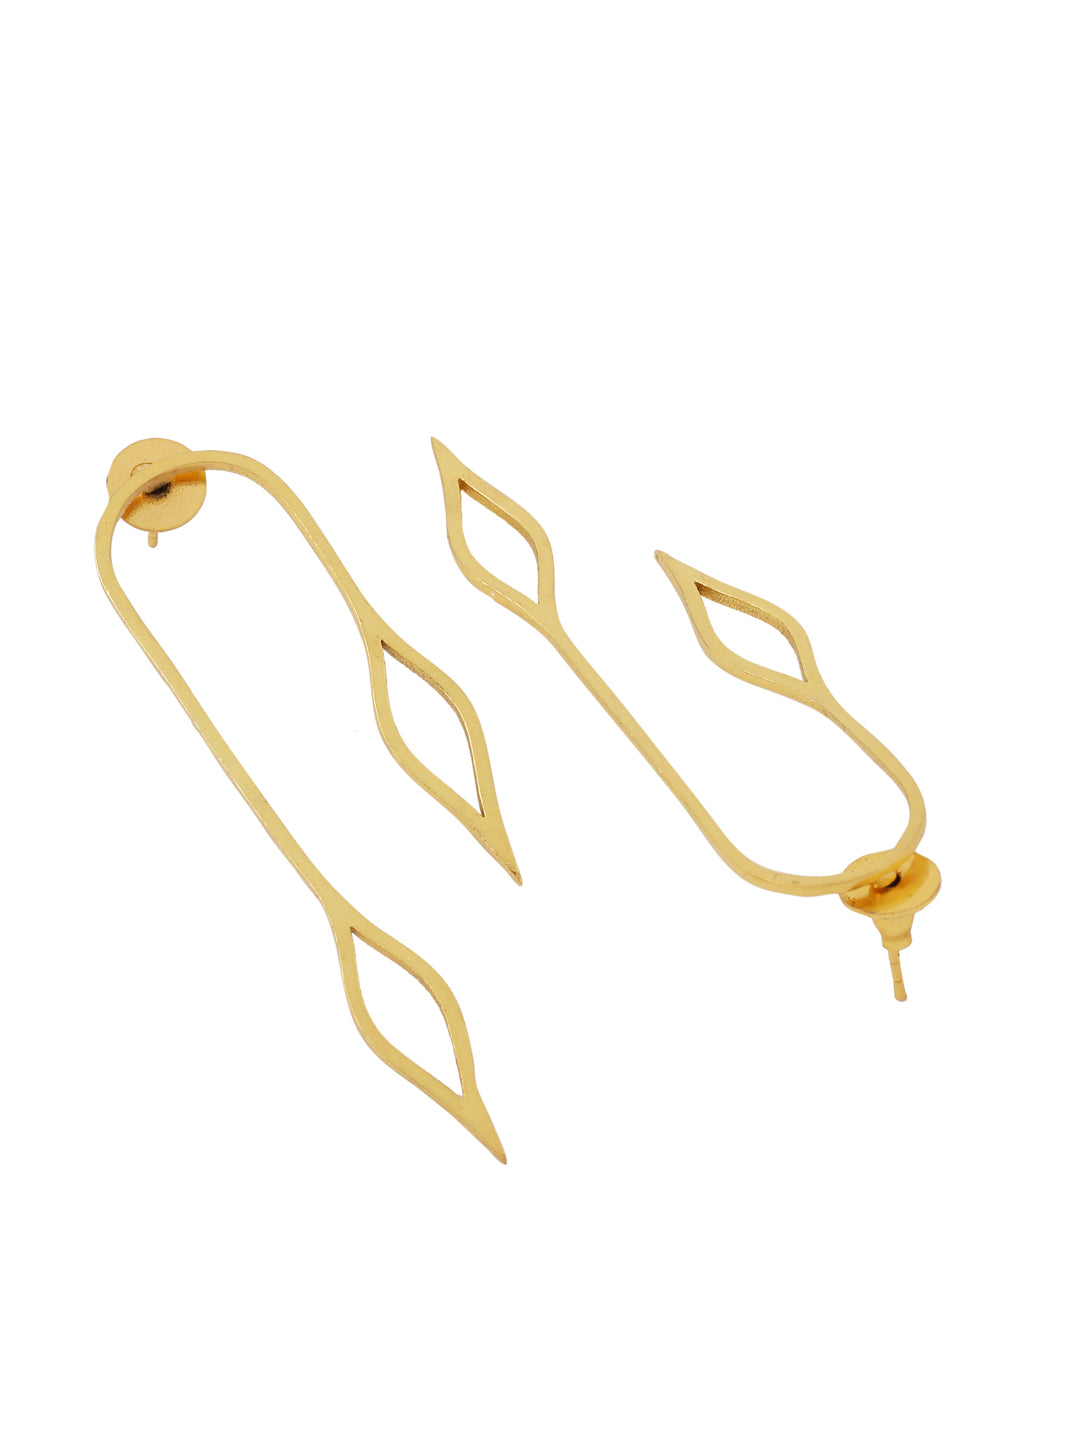 Foliage Earrings - Golden